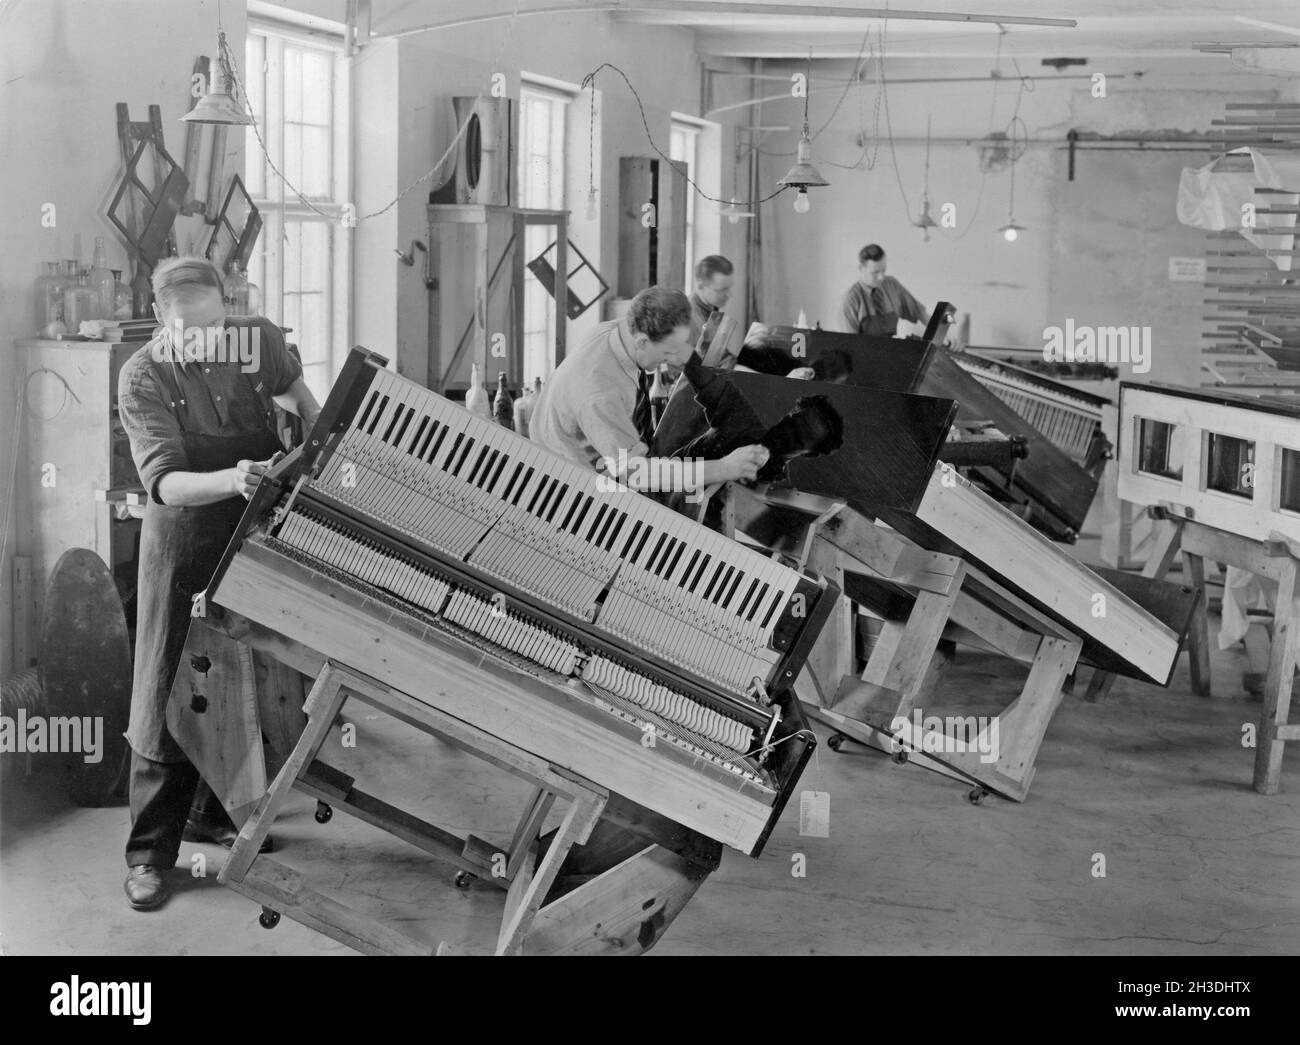 Klavierhersteller. Interieur vom schwedischen Hersteller von Klavieren und Flügeln Östlind & Almquist in Arvika. Arbeiter werden gesehen, wie sie die Holzarbeiten des Klaviergehäuses polieren, um sie glänzen zu lassen. Stockfoto